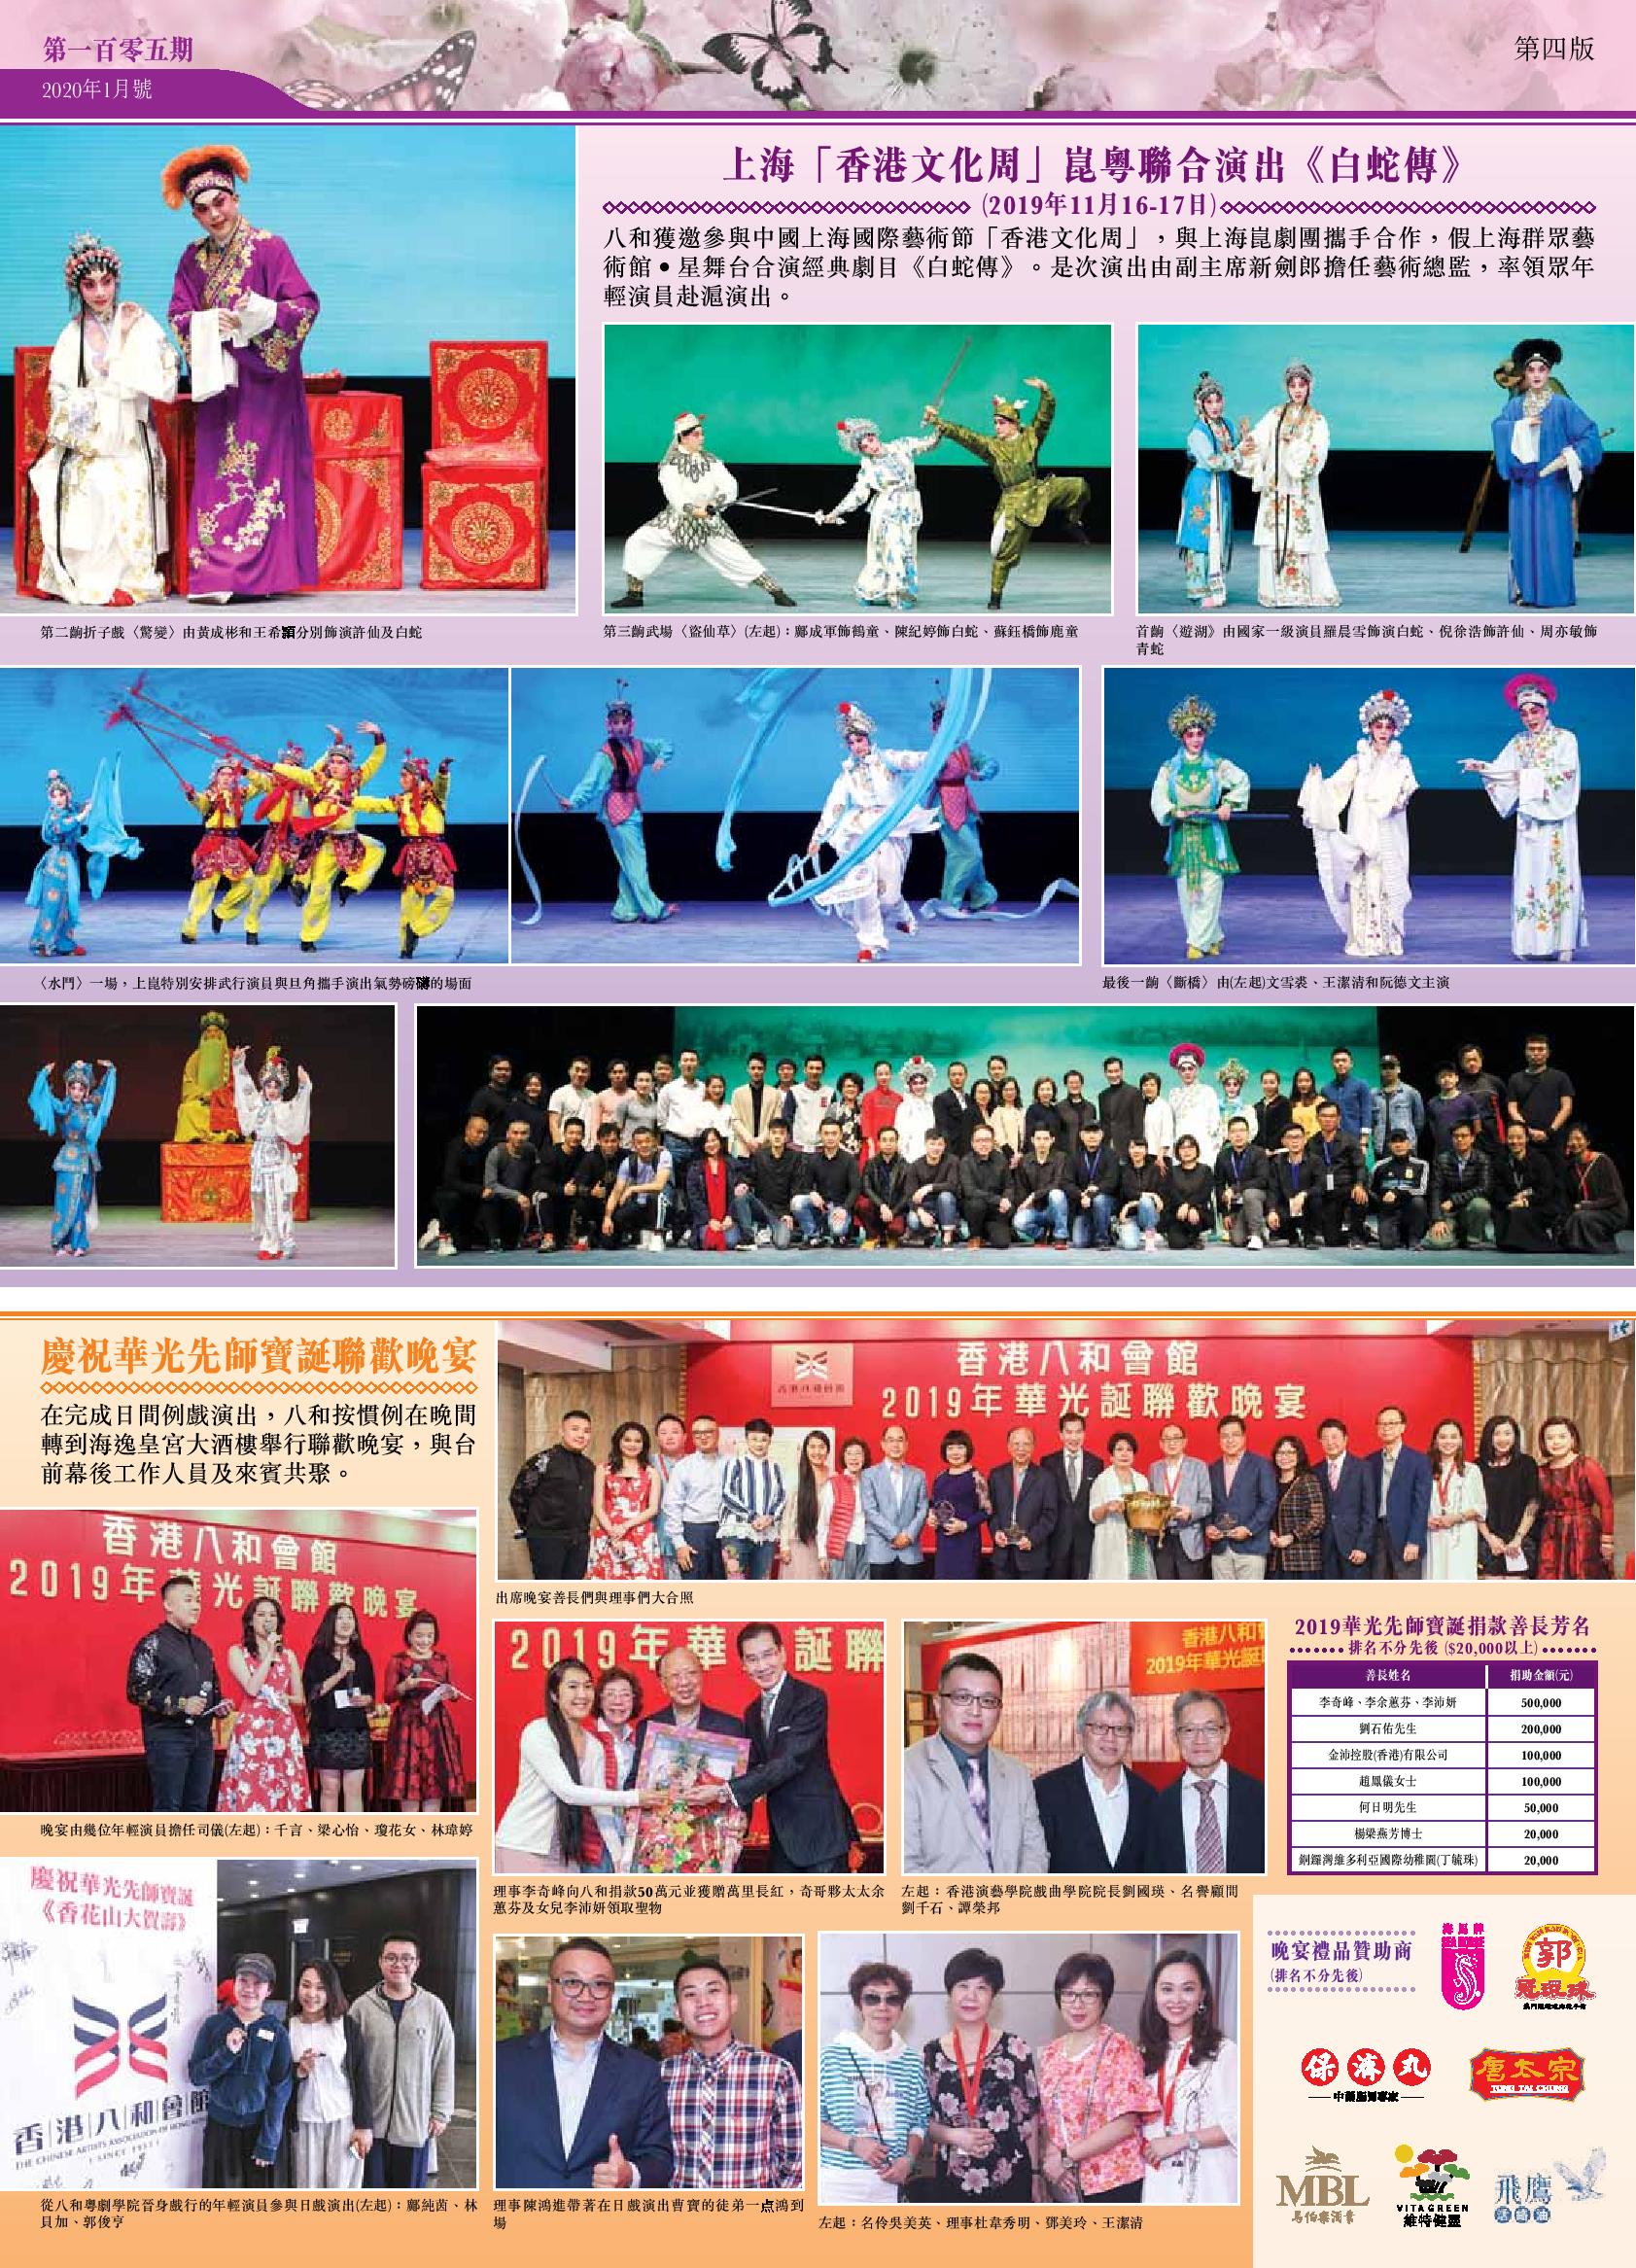 上海「香港文化周」崑粵聯合演出《白蛇傳》 | 慶祝華光先師寶誕聯歡晚宴